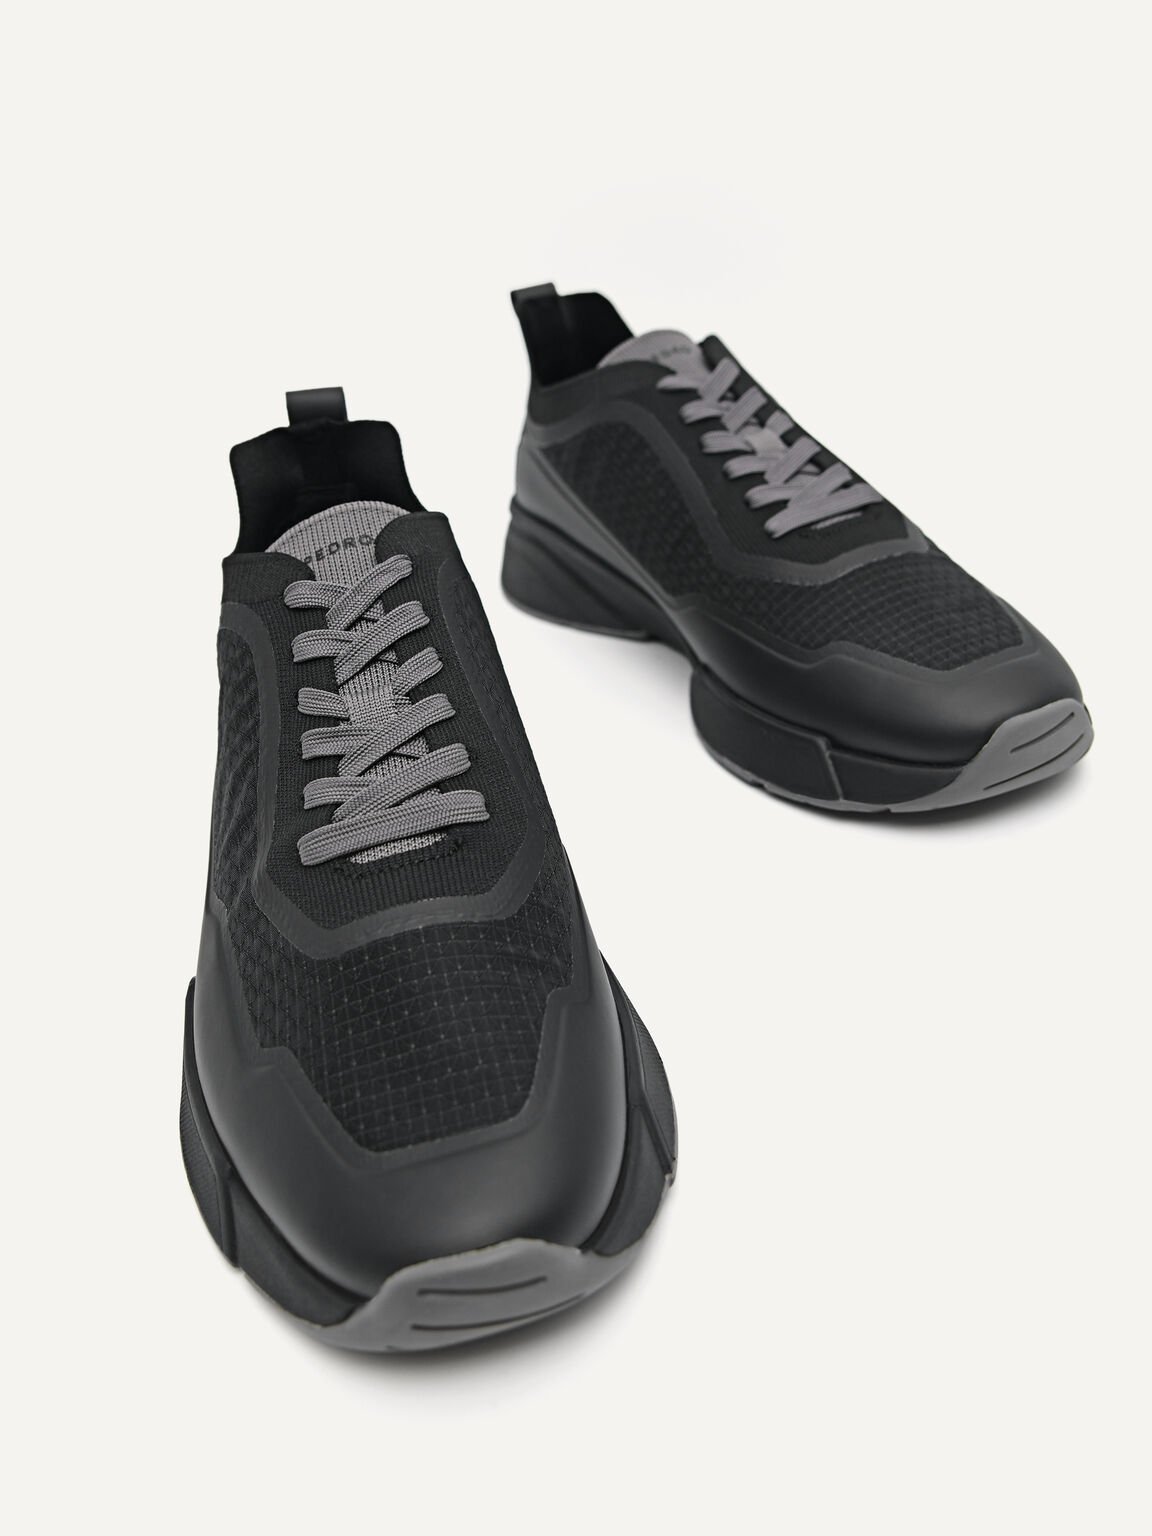 針織厚底運動鞋, 黑色, hi-res